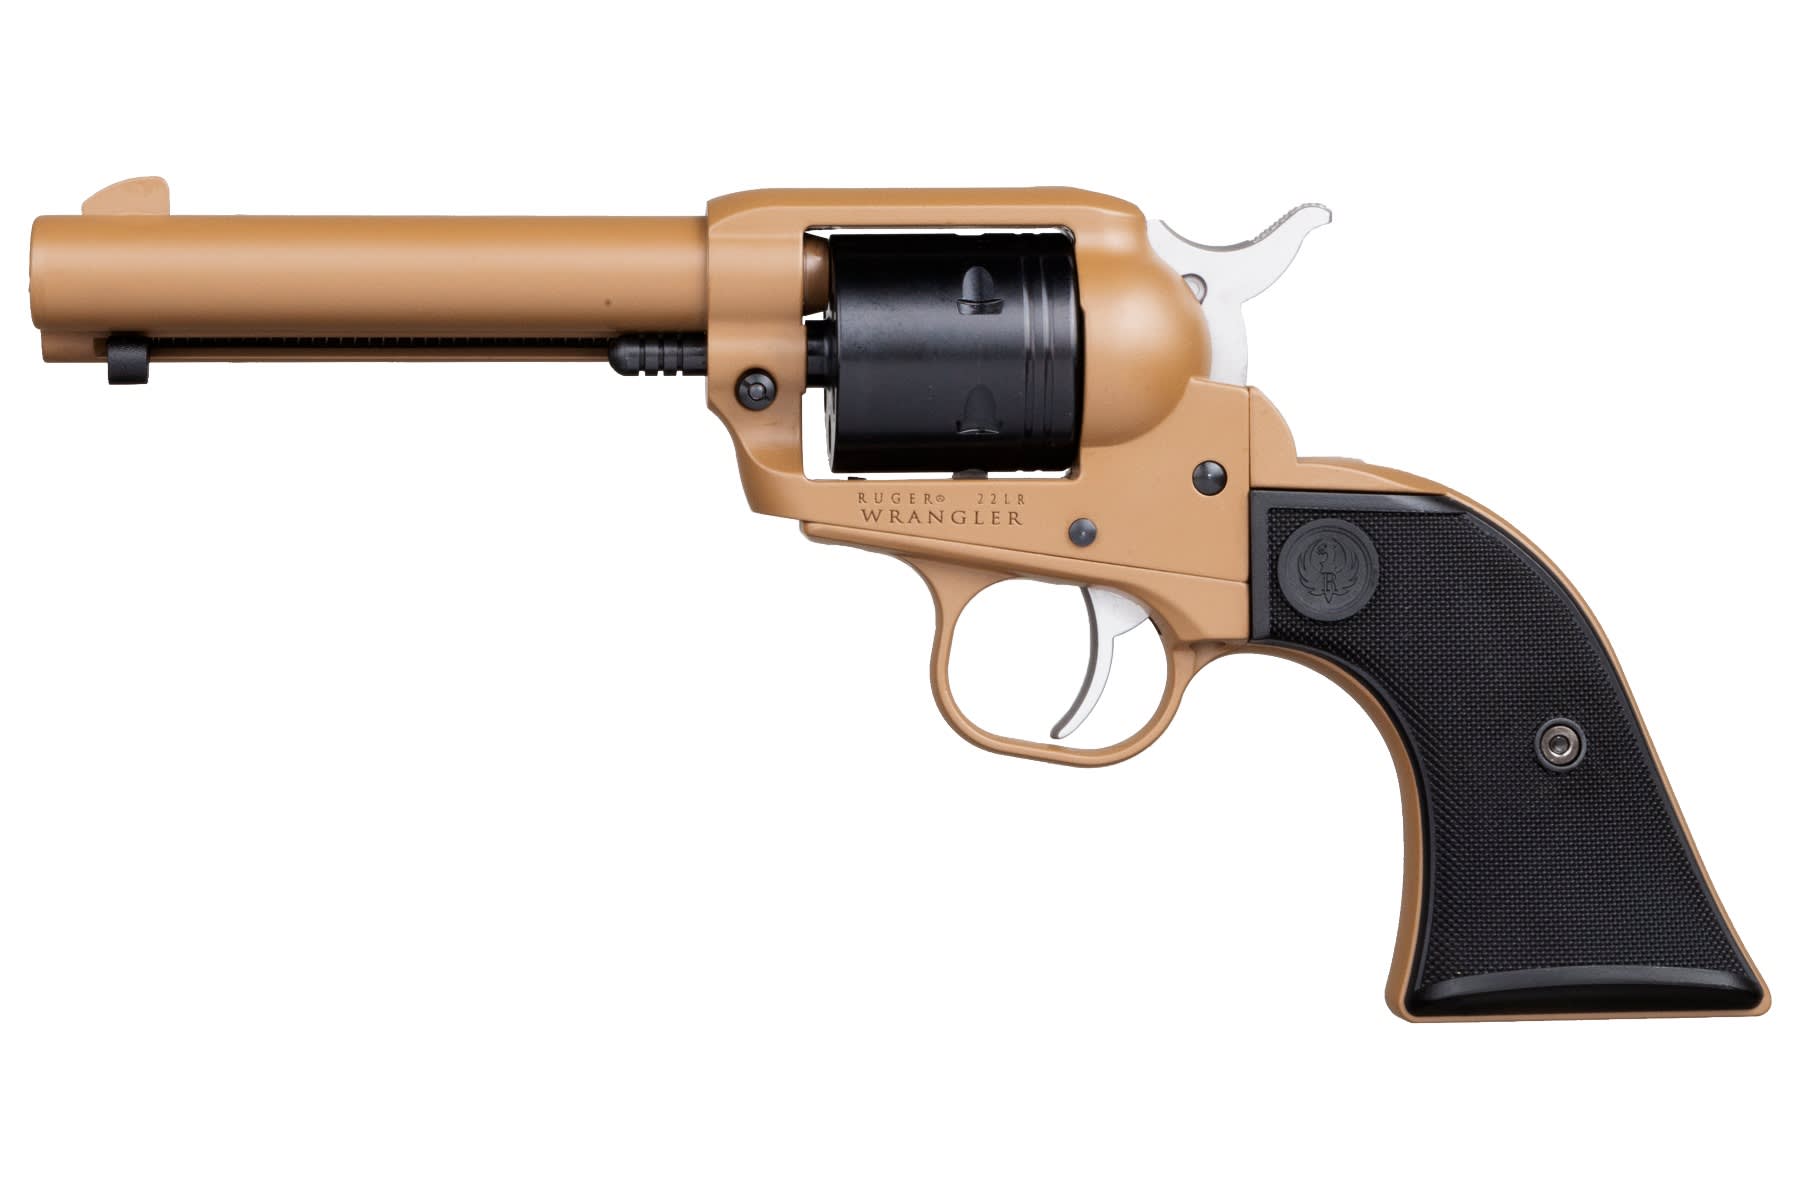 Ruger Wrangler .22 LR Revolver 2026 - Revolvers at GunBroker.com ...